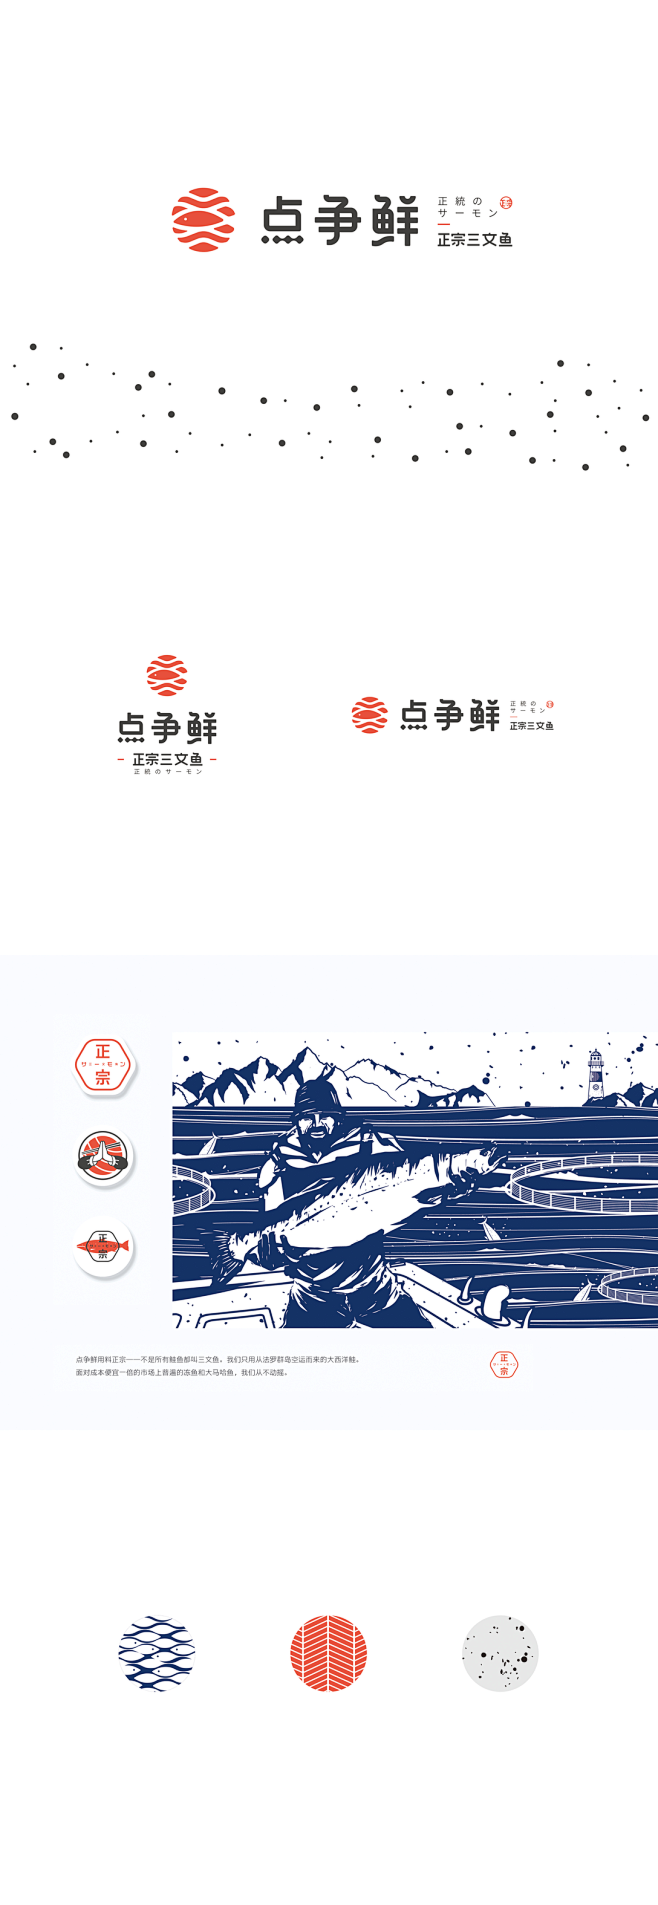 点争鲜 | 日式料理 生鱼片 品牌形象塑...